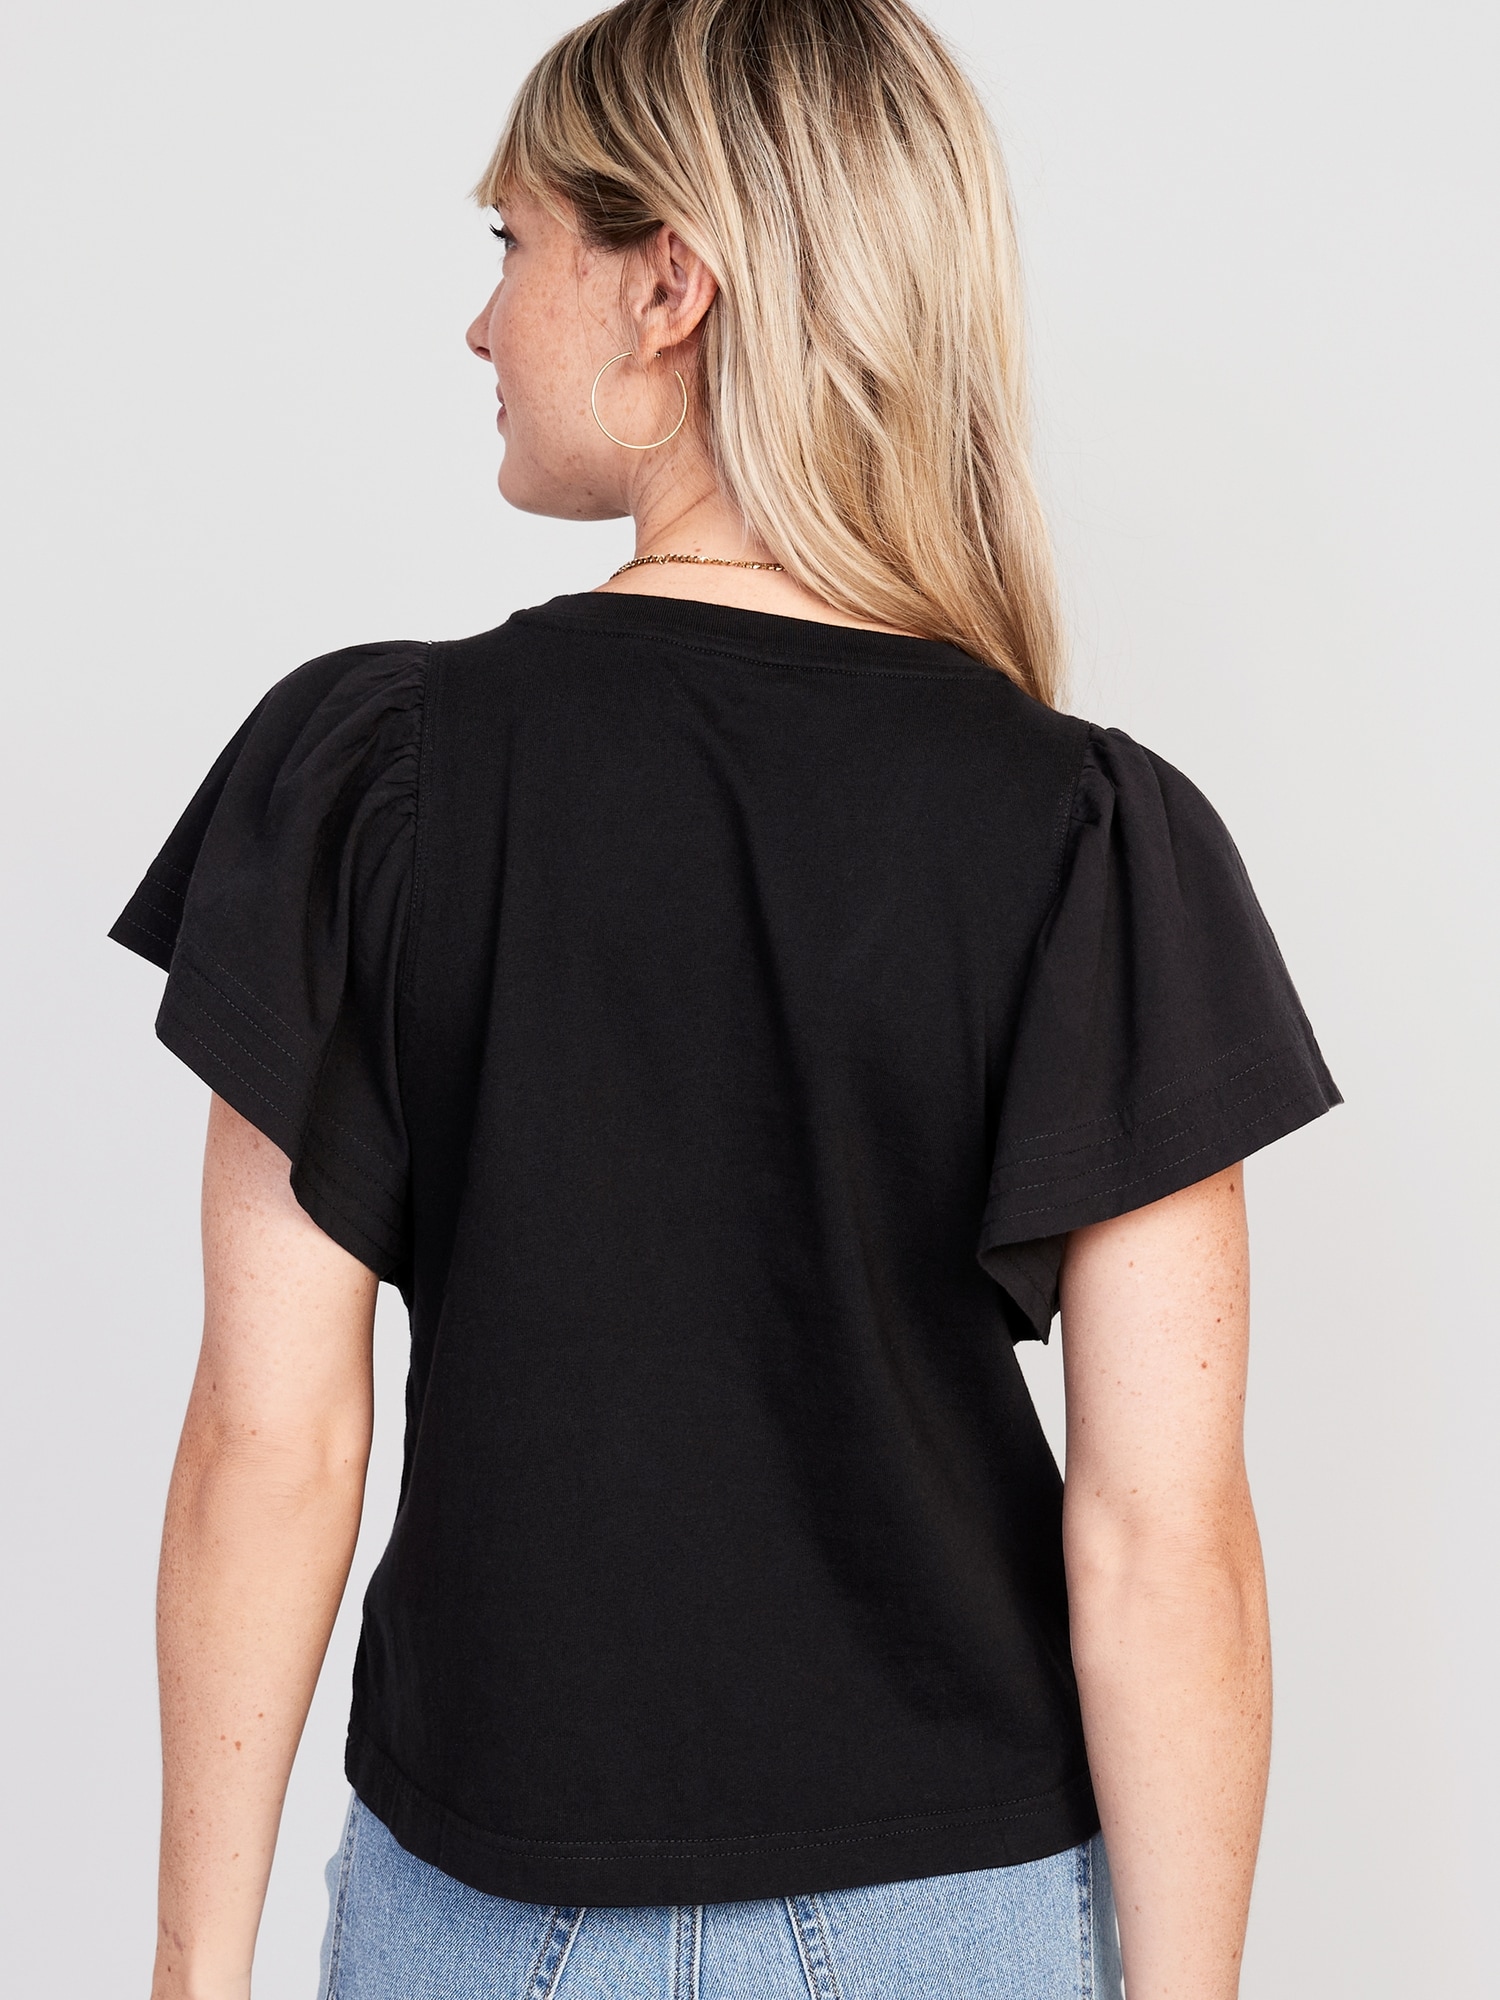 Flutter-Sleeve Paneled T-Shirt for Women | Old Navy